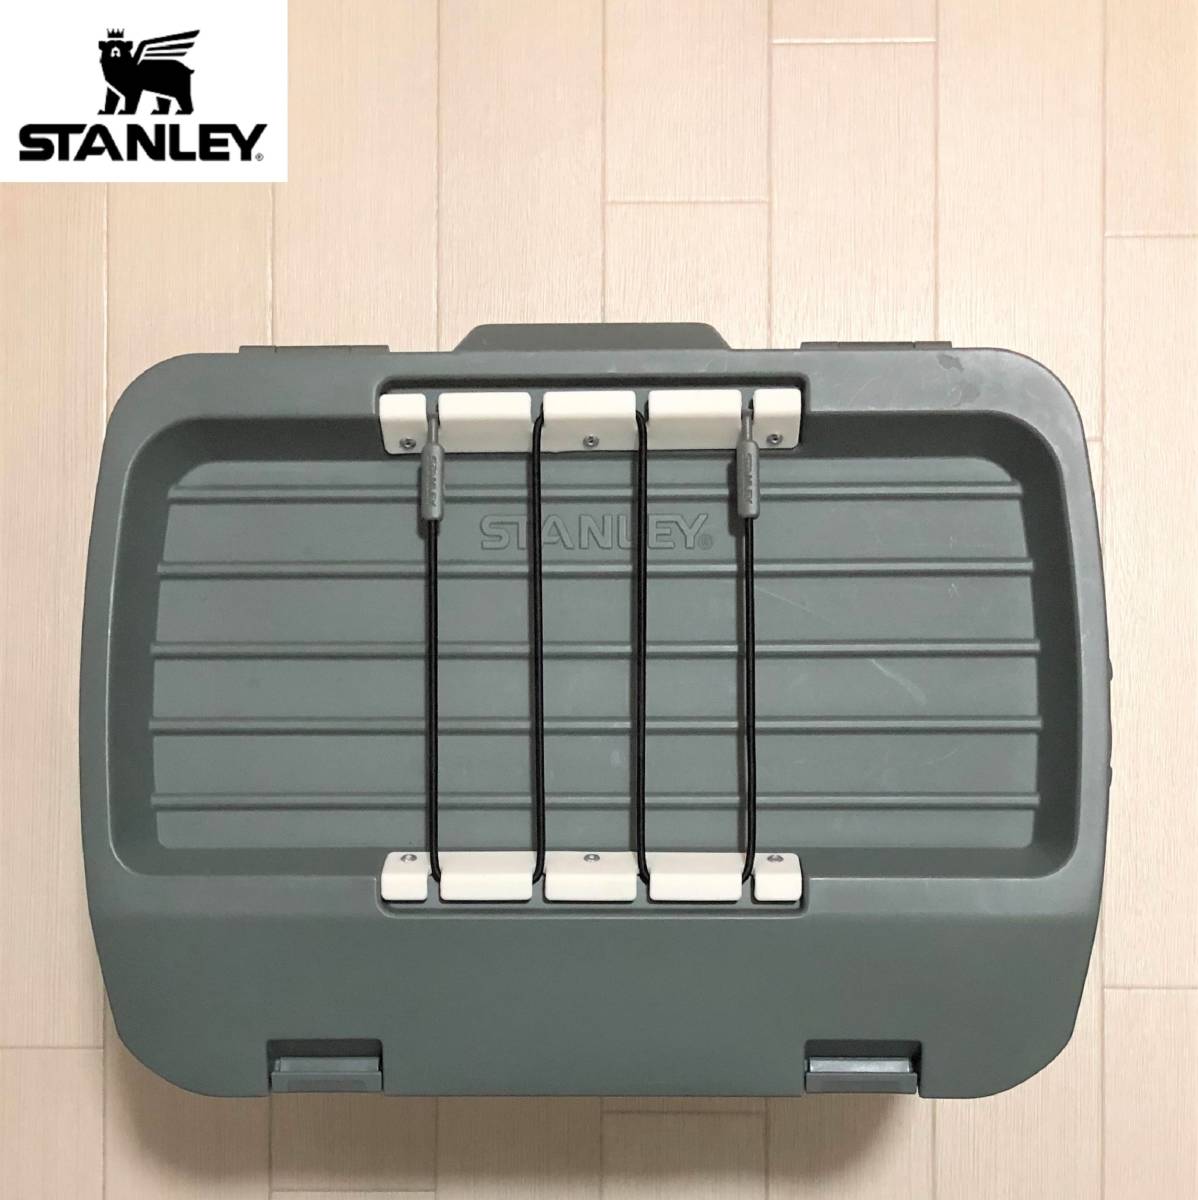 STANLEY スタンレー Cooler Box クーラーボックス 15.1L WHITE ホワイト 350ml缶21本収納可能 保冷 アウトドア キャンプ 釣り レジャー